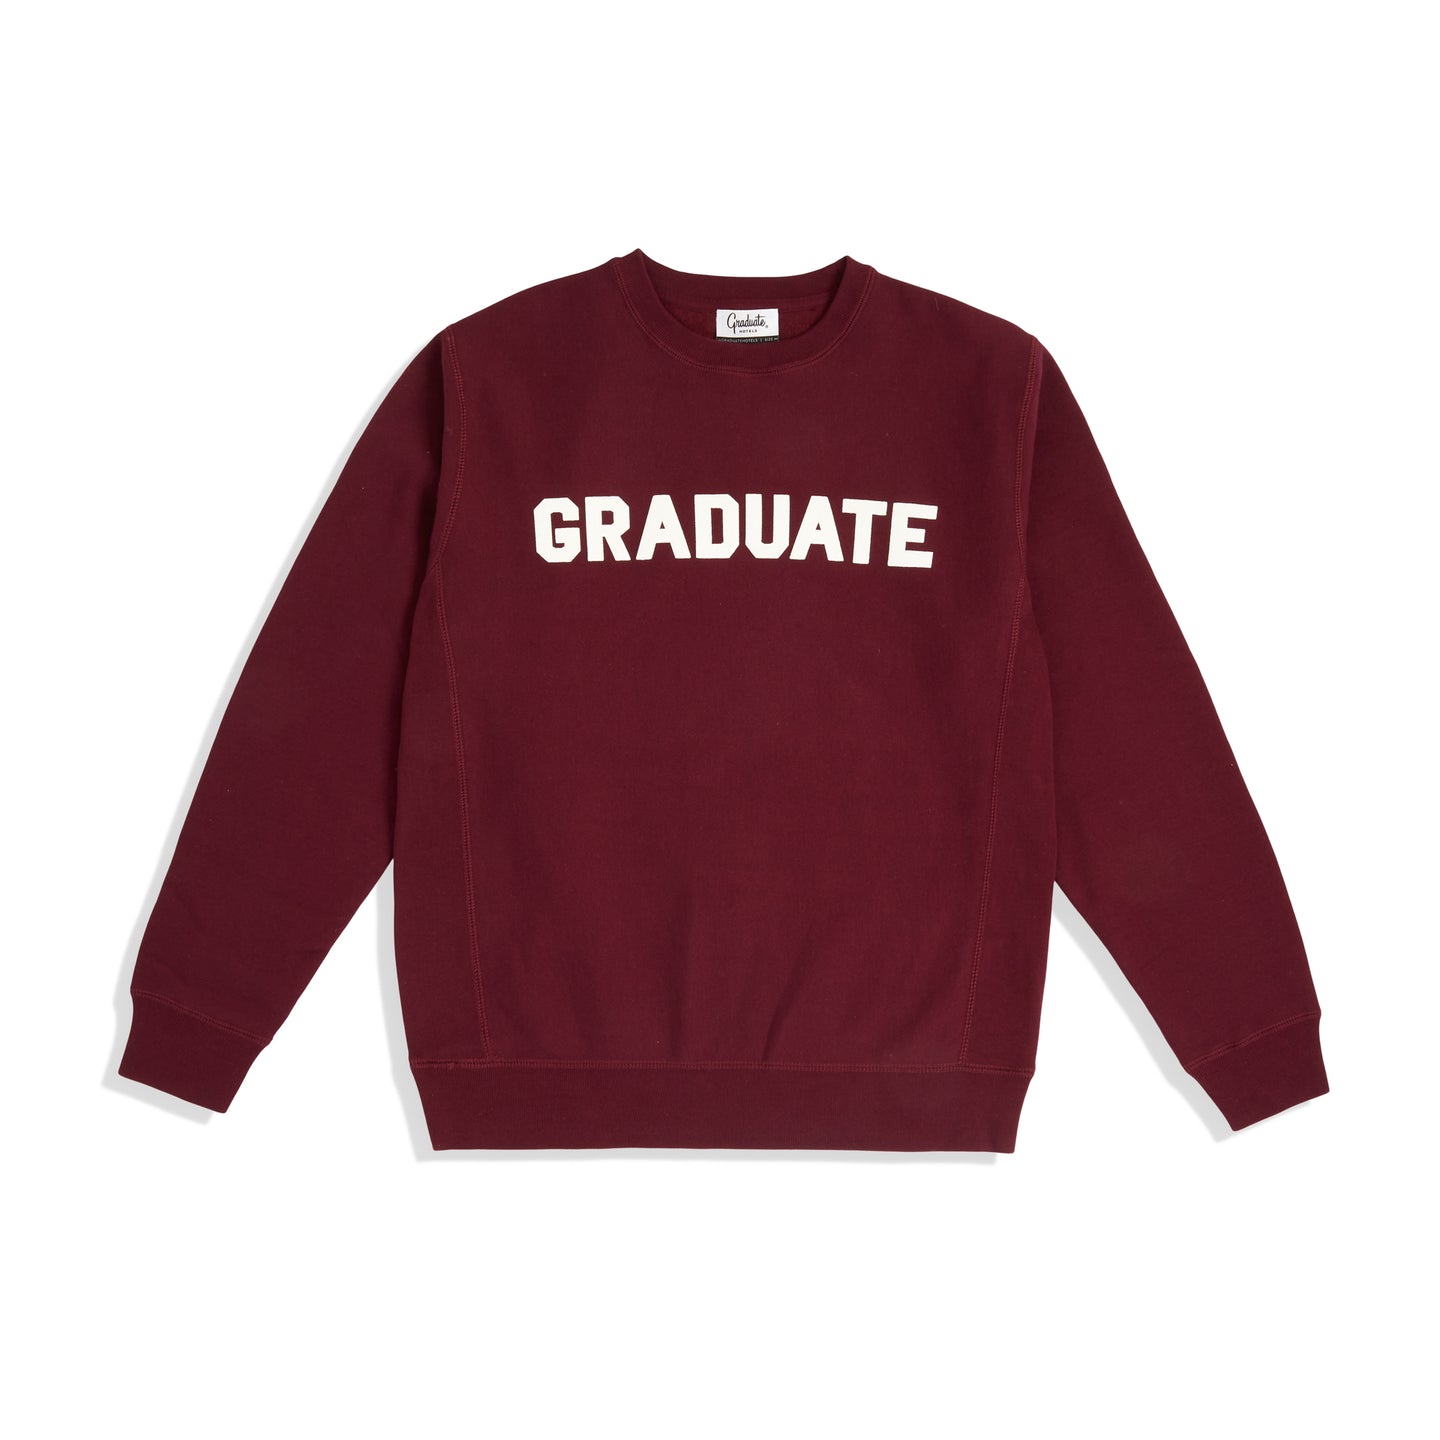 Collegiate Crewneck Sweatshirt - Plum